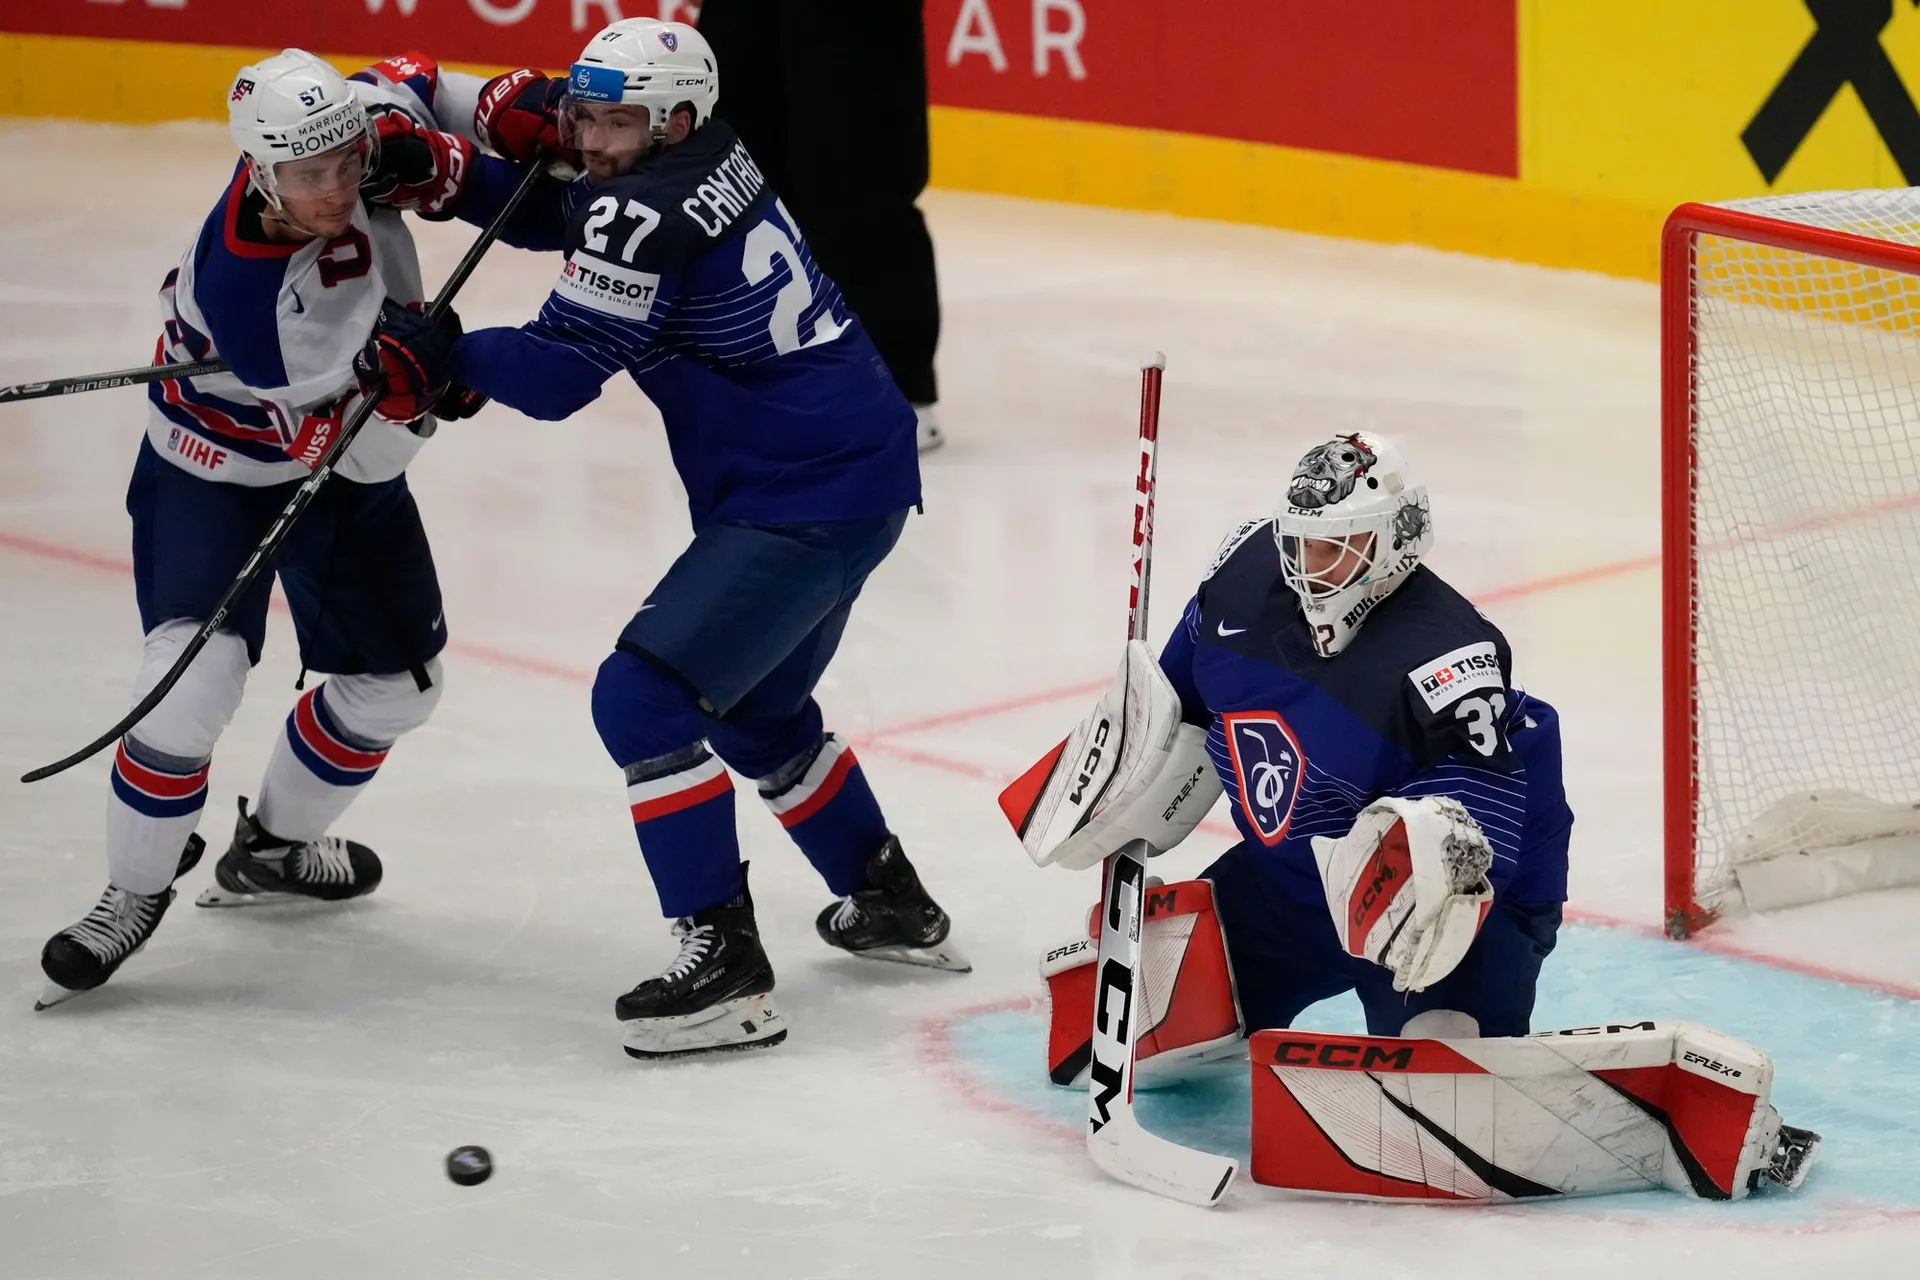 czech-republic-ice-hockey-worlds336421.j